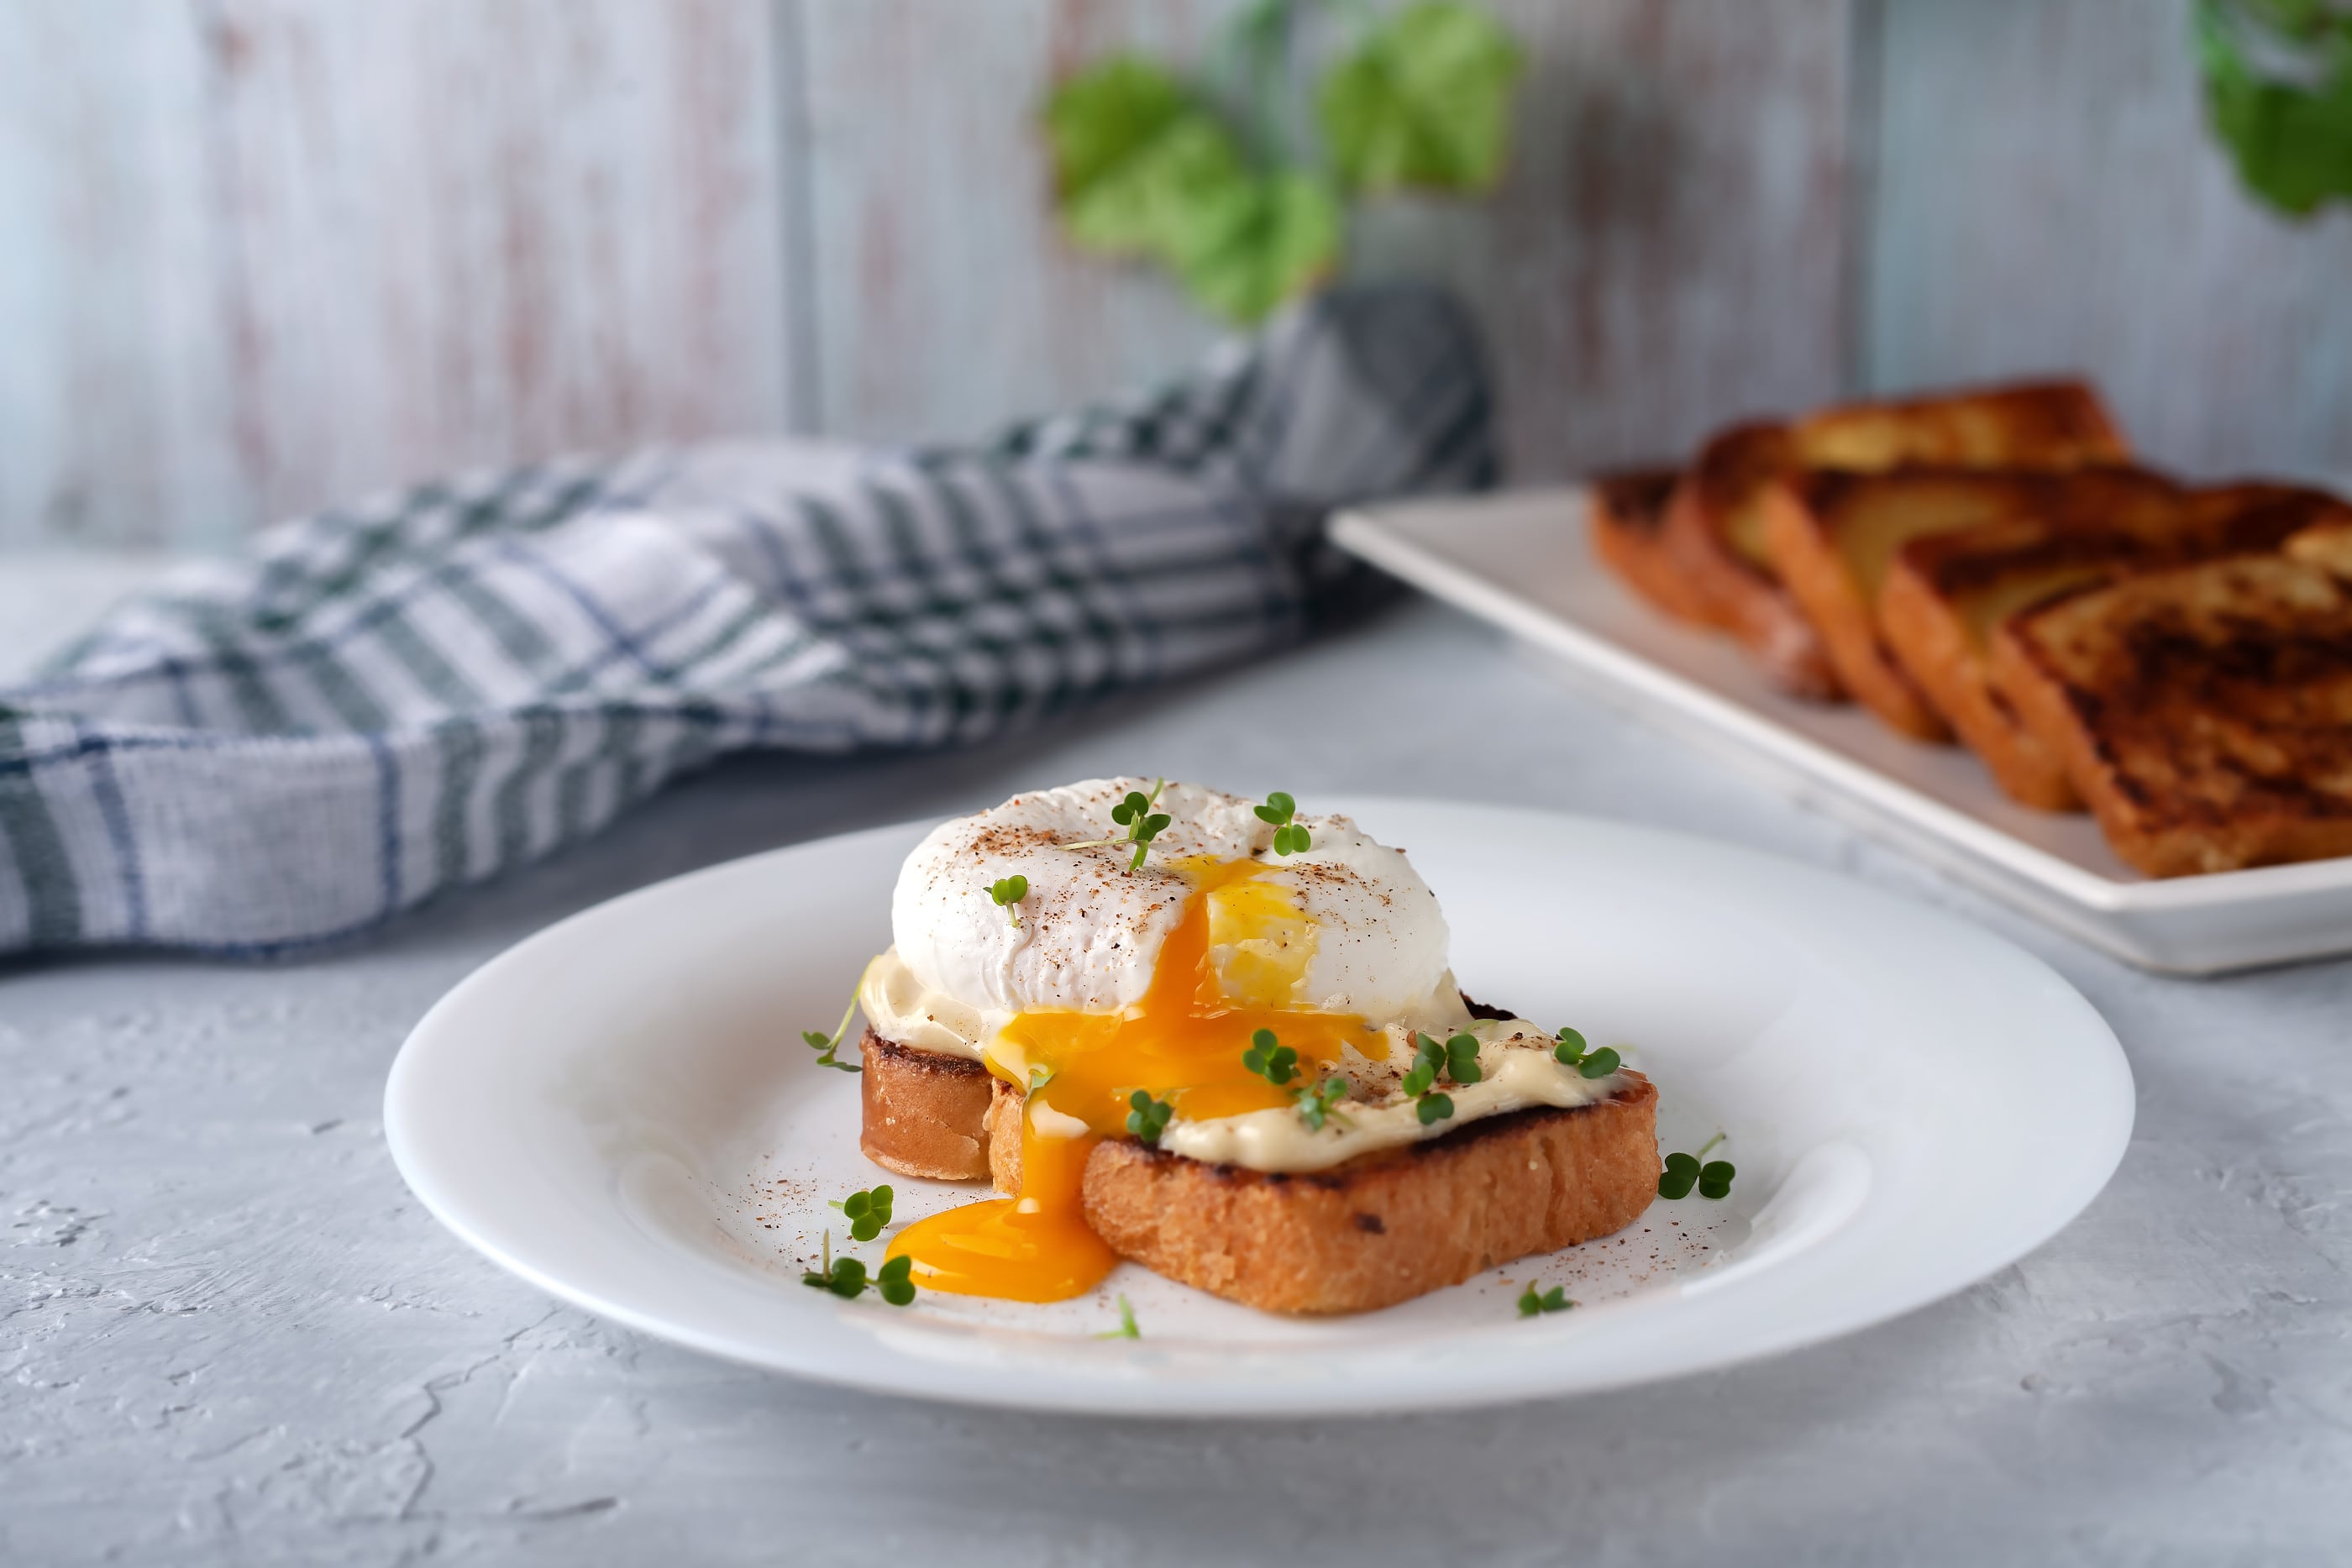 Todos los tips para cocinar huevos: poché, duros, pasados por agua y mollet  - Cucinare